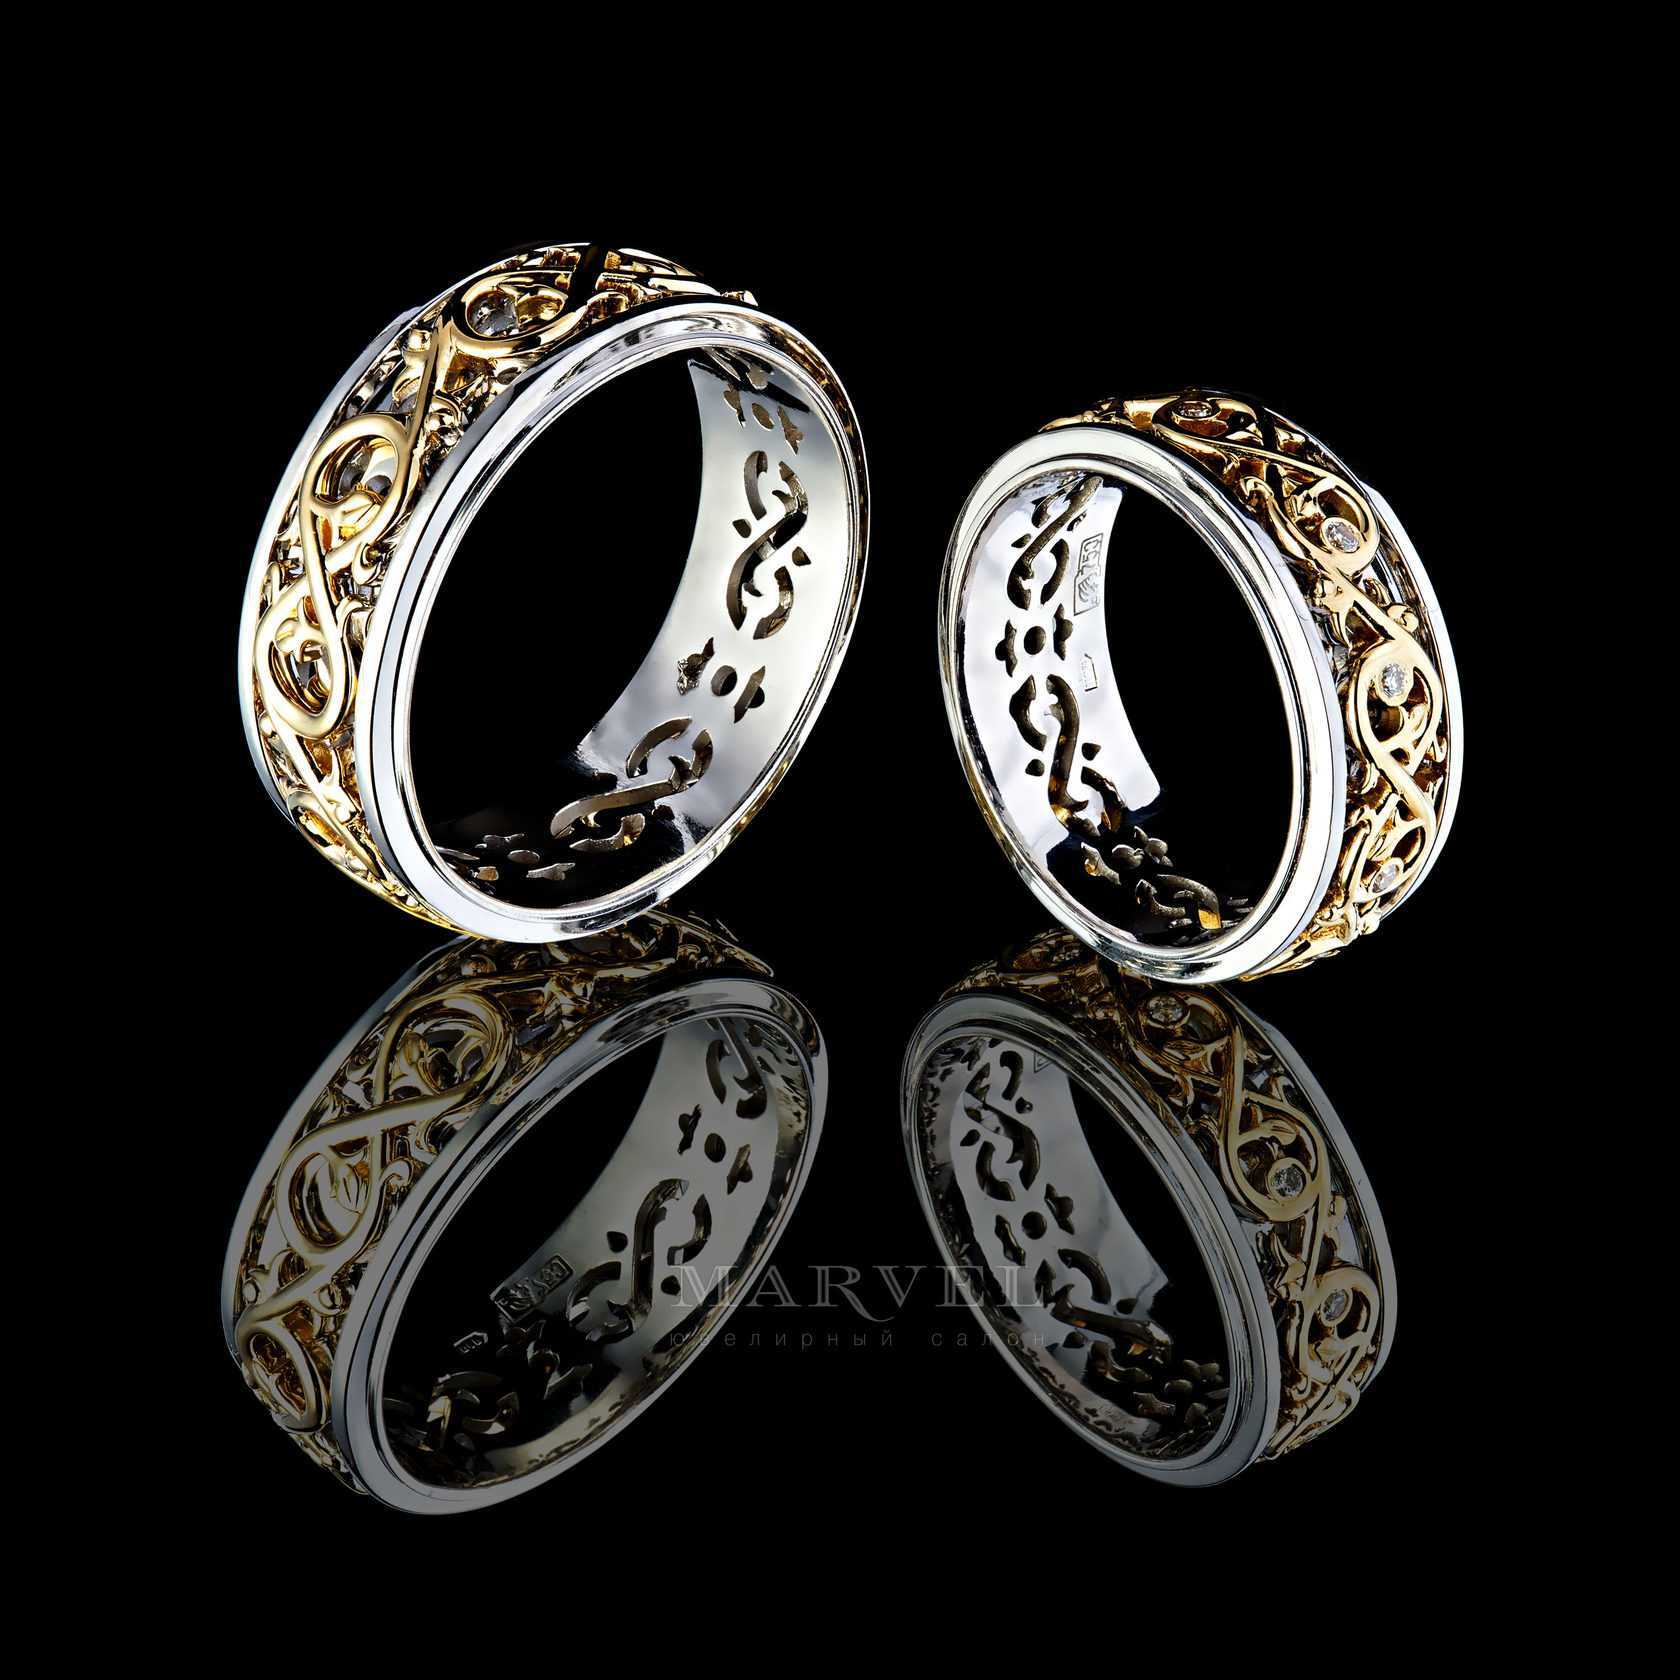 Парные обручальные кольца - оригинальные, эксклюзивные модели